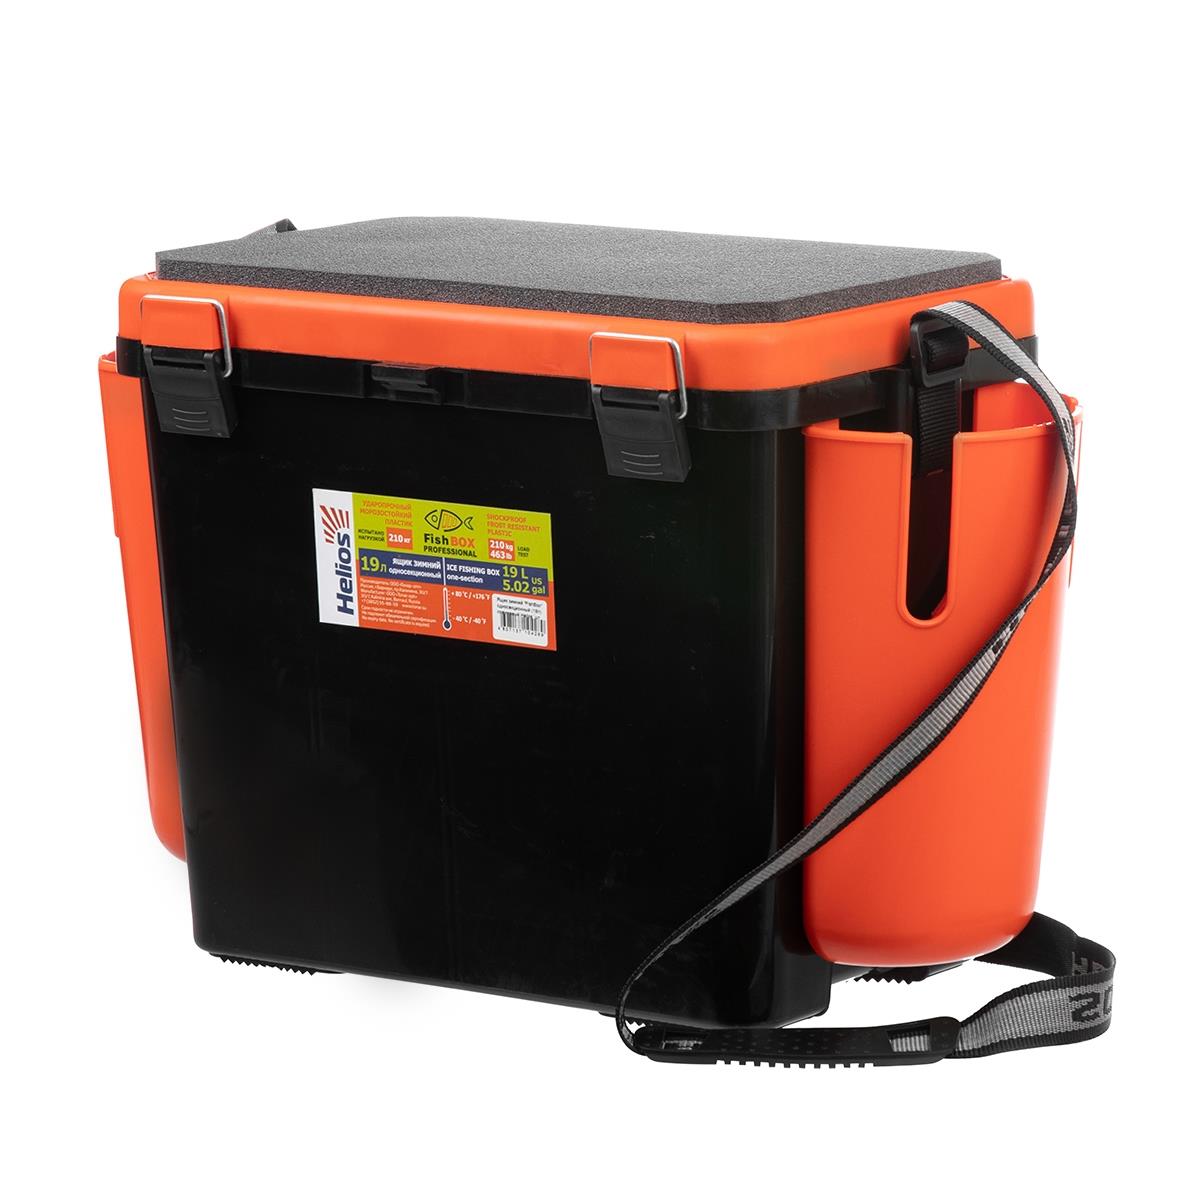 Ящик FishBox односекционный 19л оранжевый Helios система приготовления пищи 0 8л оранжевый trg 049 tramp